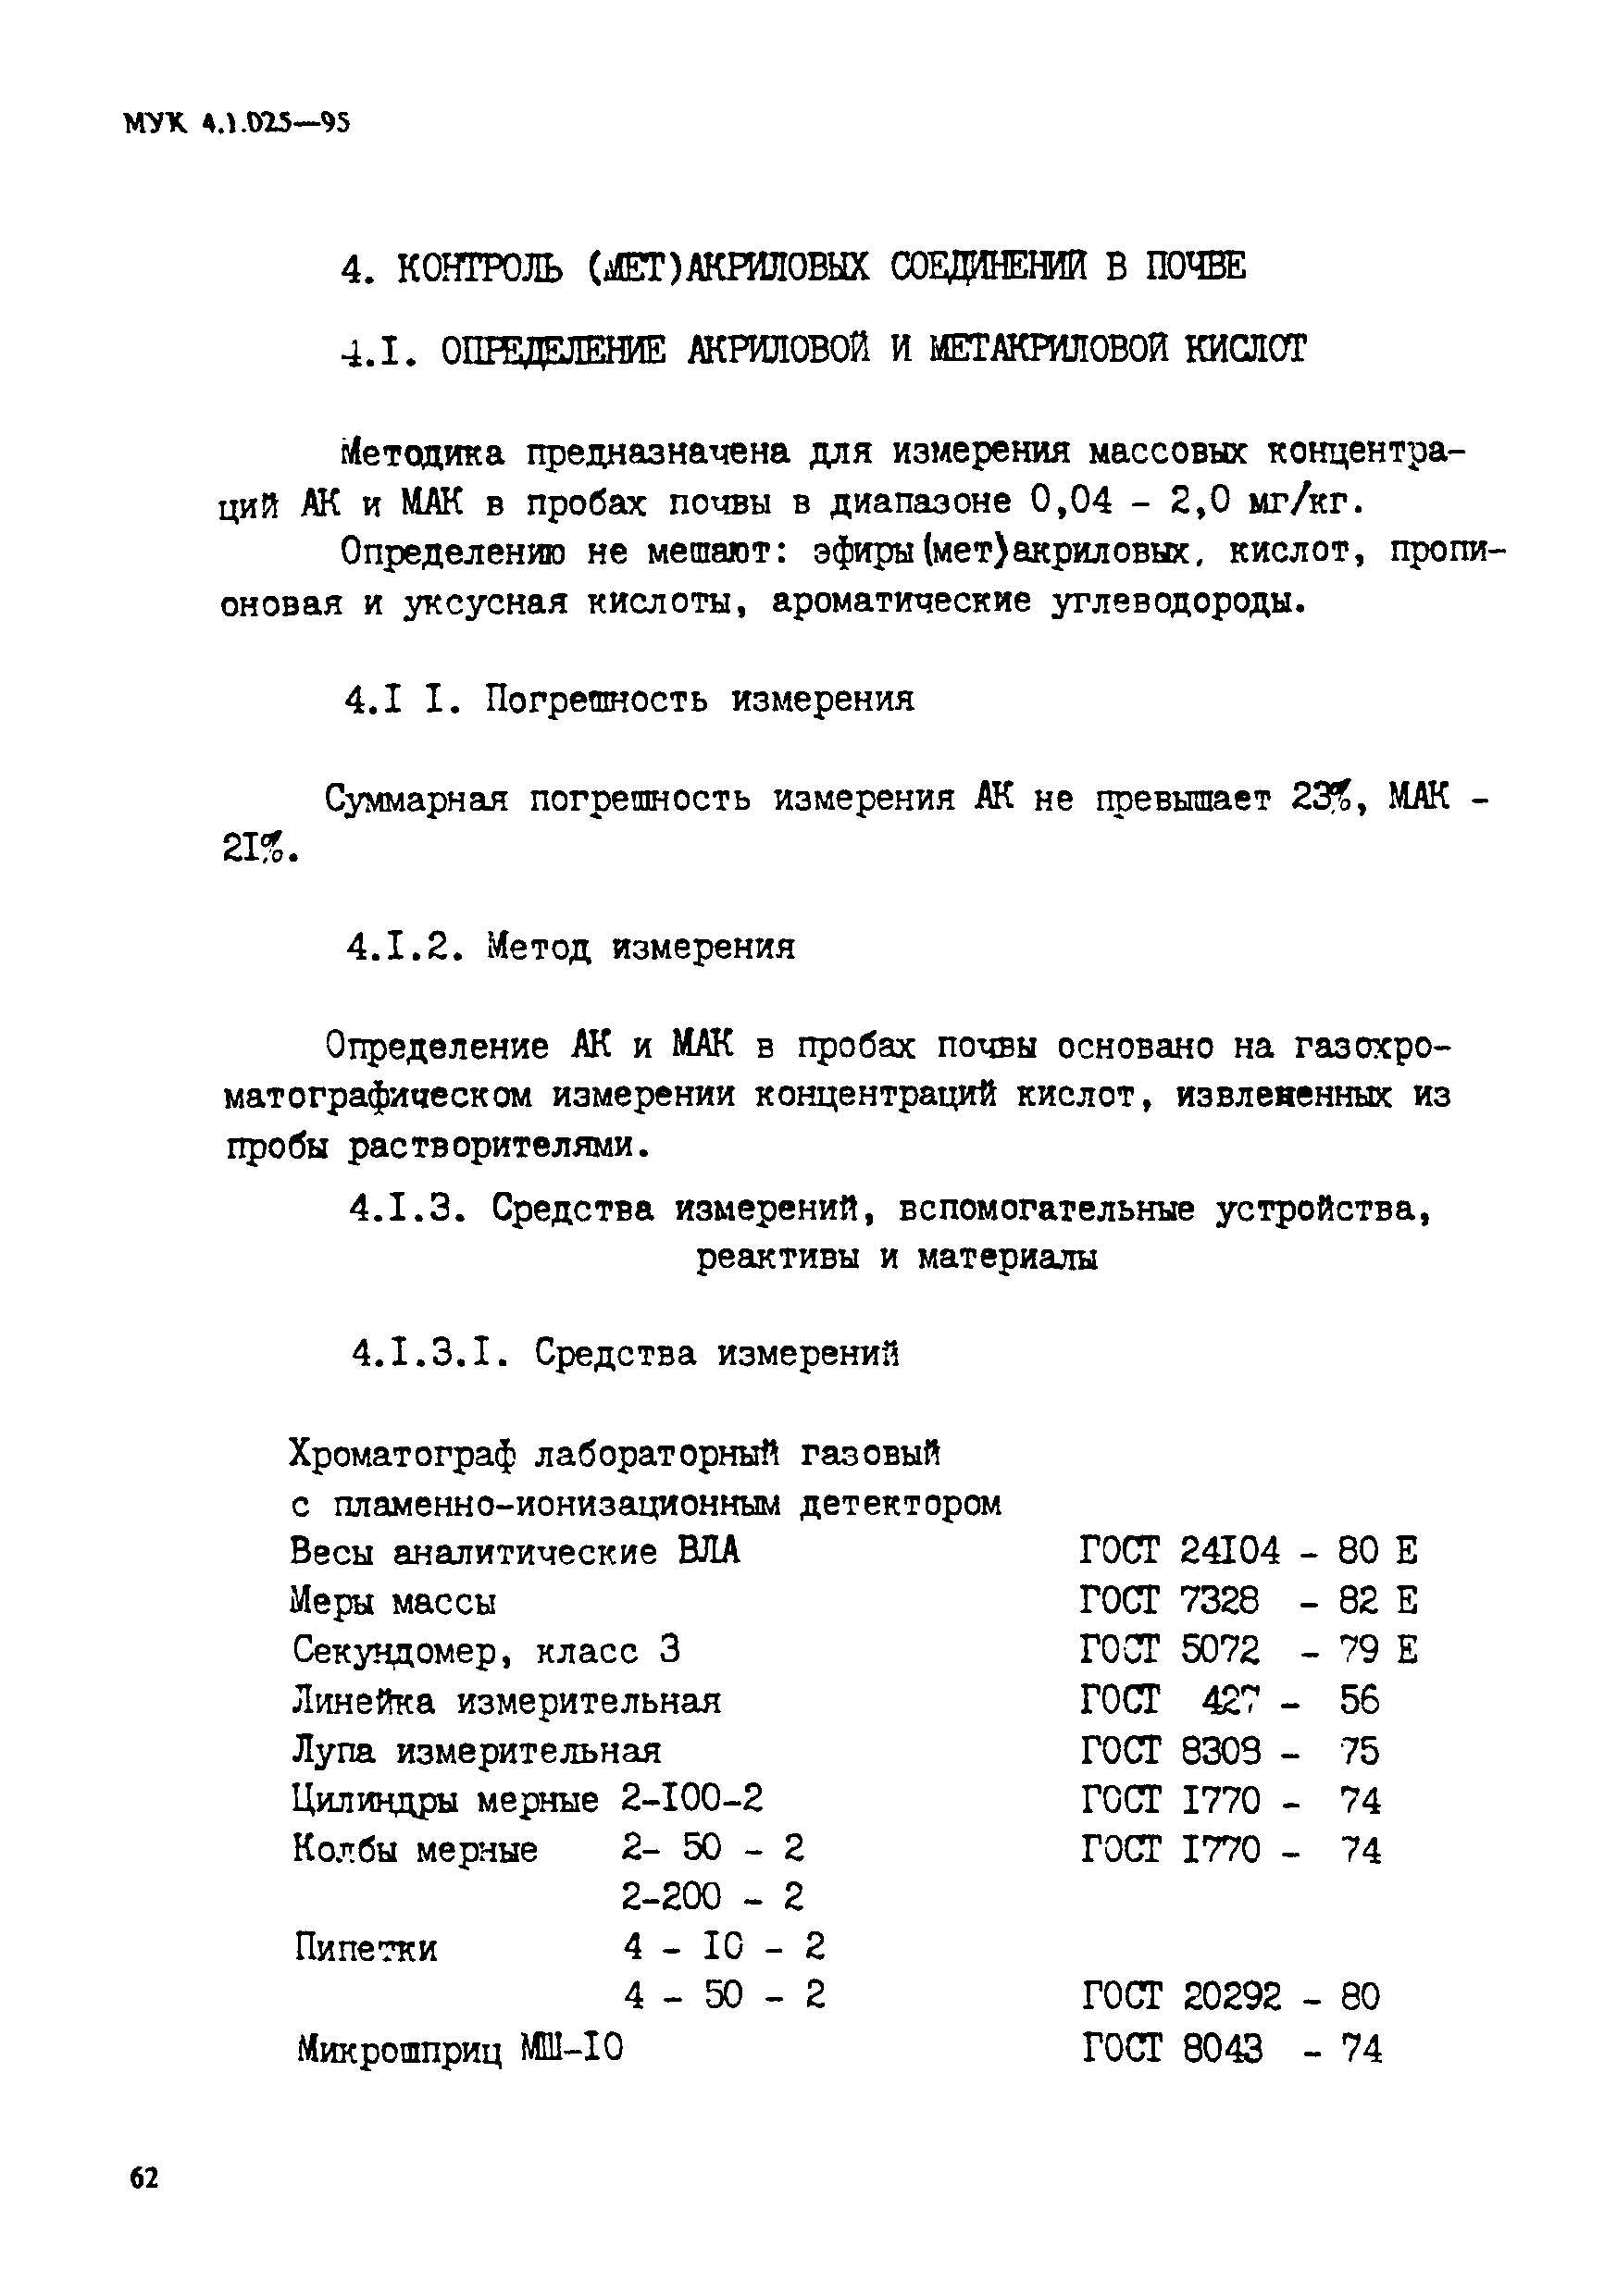 МУК 4.1.025-95